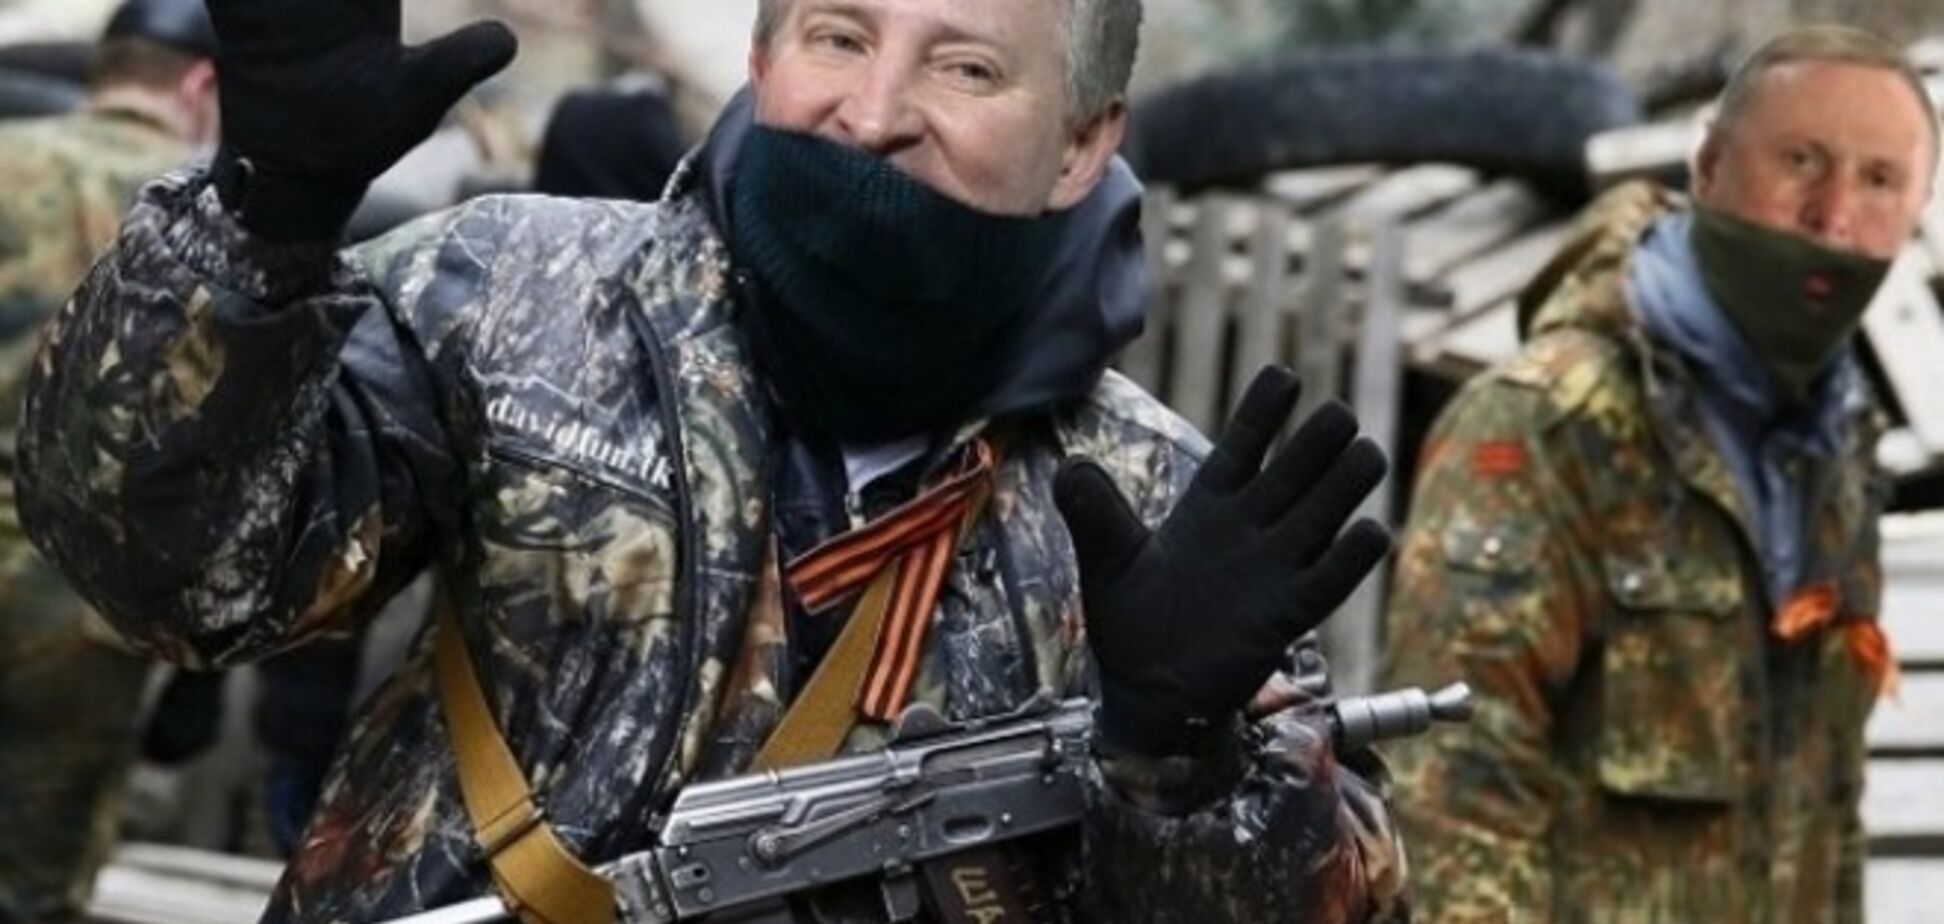 Луганчане просят Порошенко разобраться с финансирующими террористов 'хозяевами Донбасса'